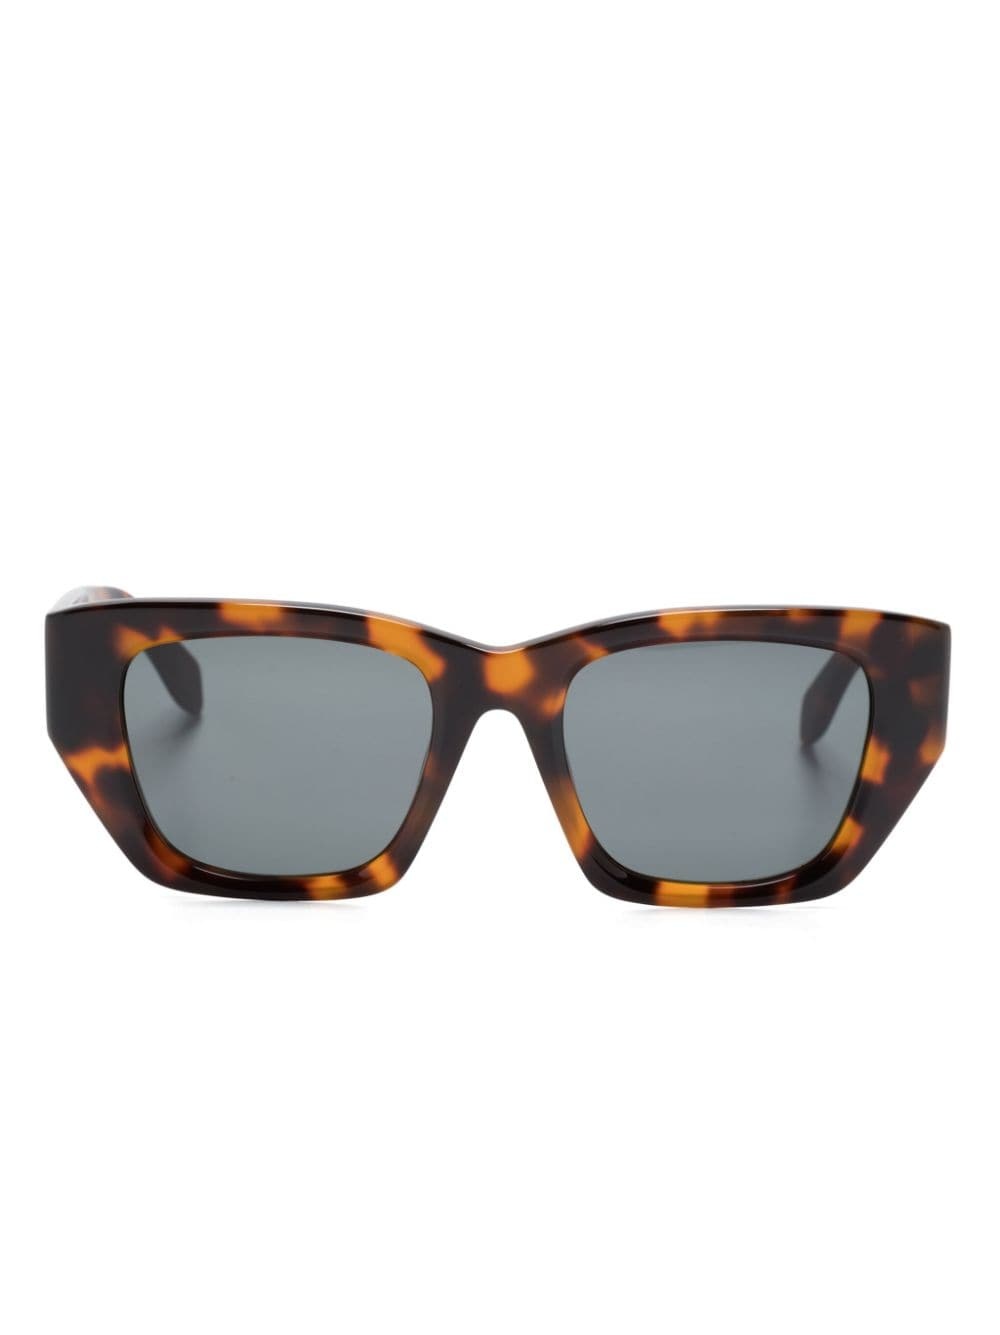 Hinkley square-frame sunglasses - 1